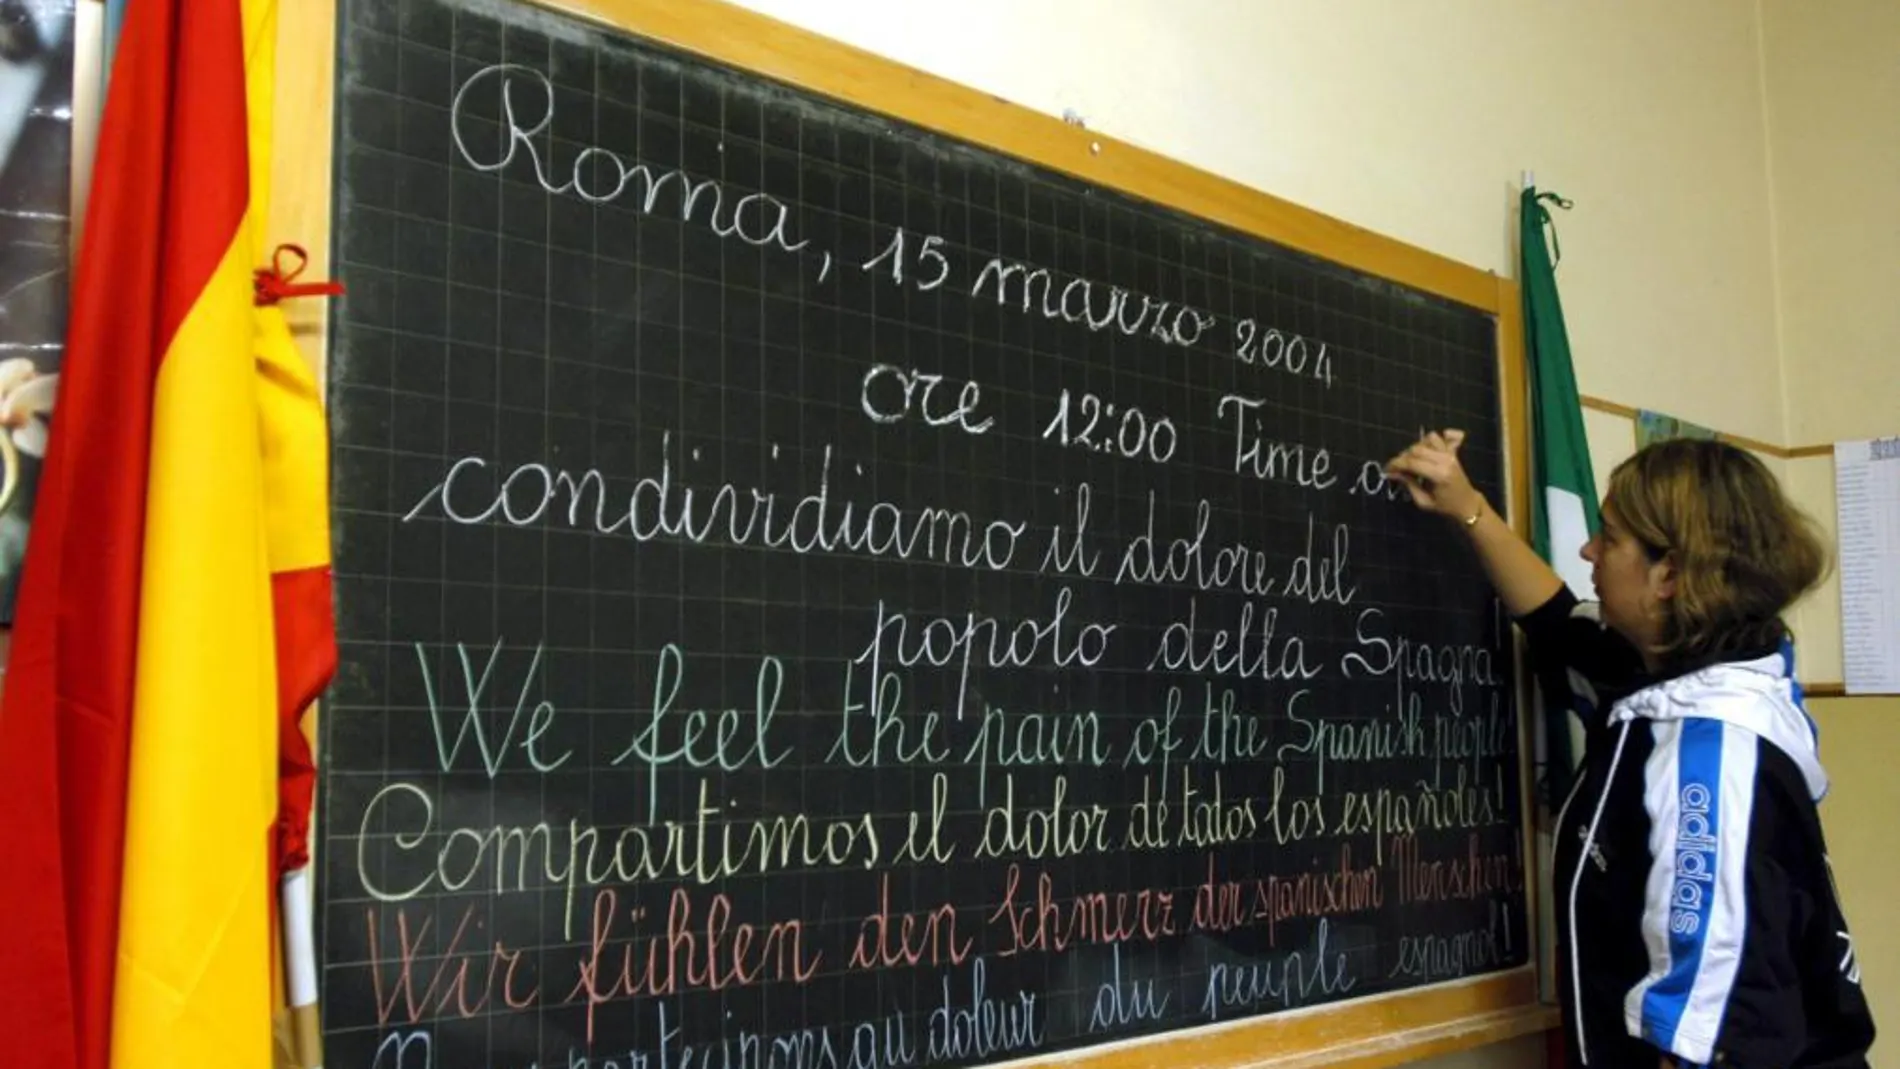 Un estudiante de secundaria escribe en una pizarra en italiano, español, inglés,a lemán y francés en recuerdo a los españoles por los atentados del 11-M